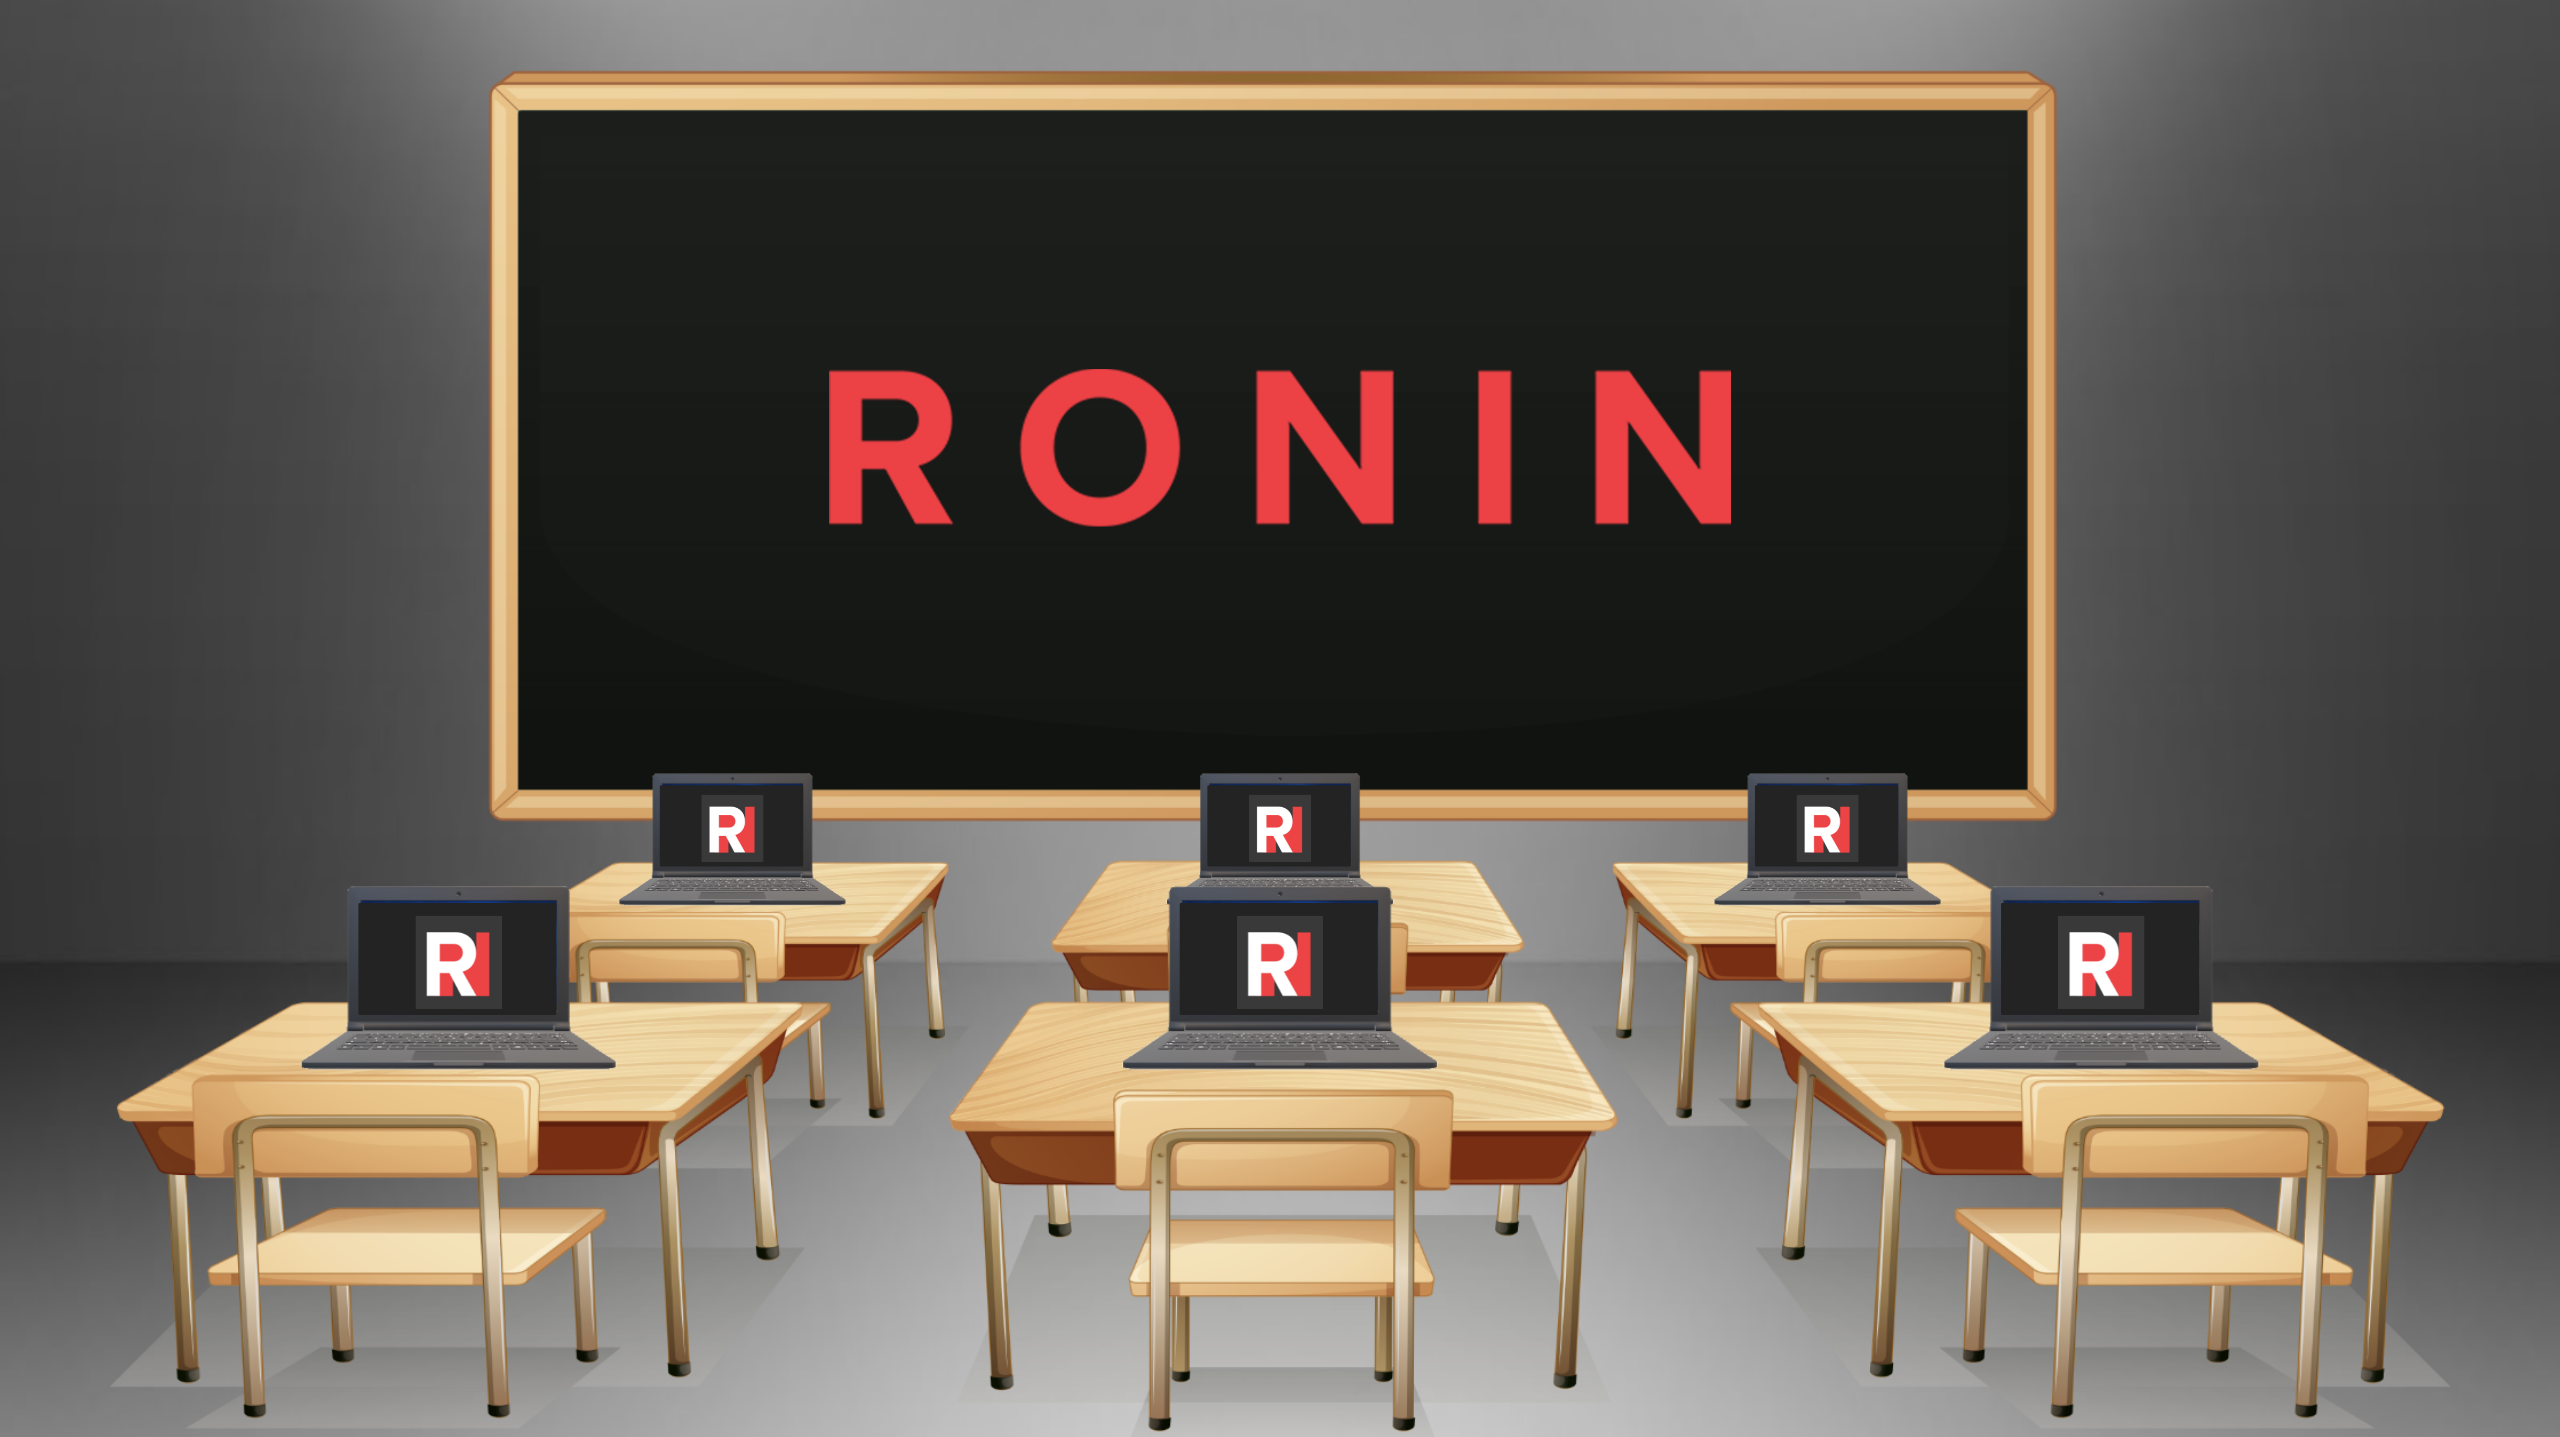 Virtual Classrooms in RONIN